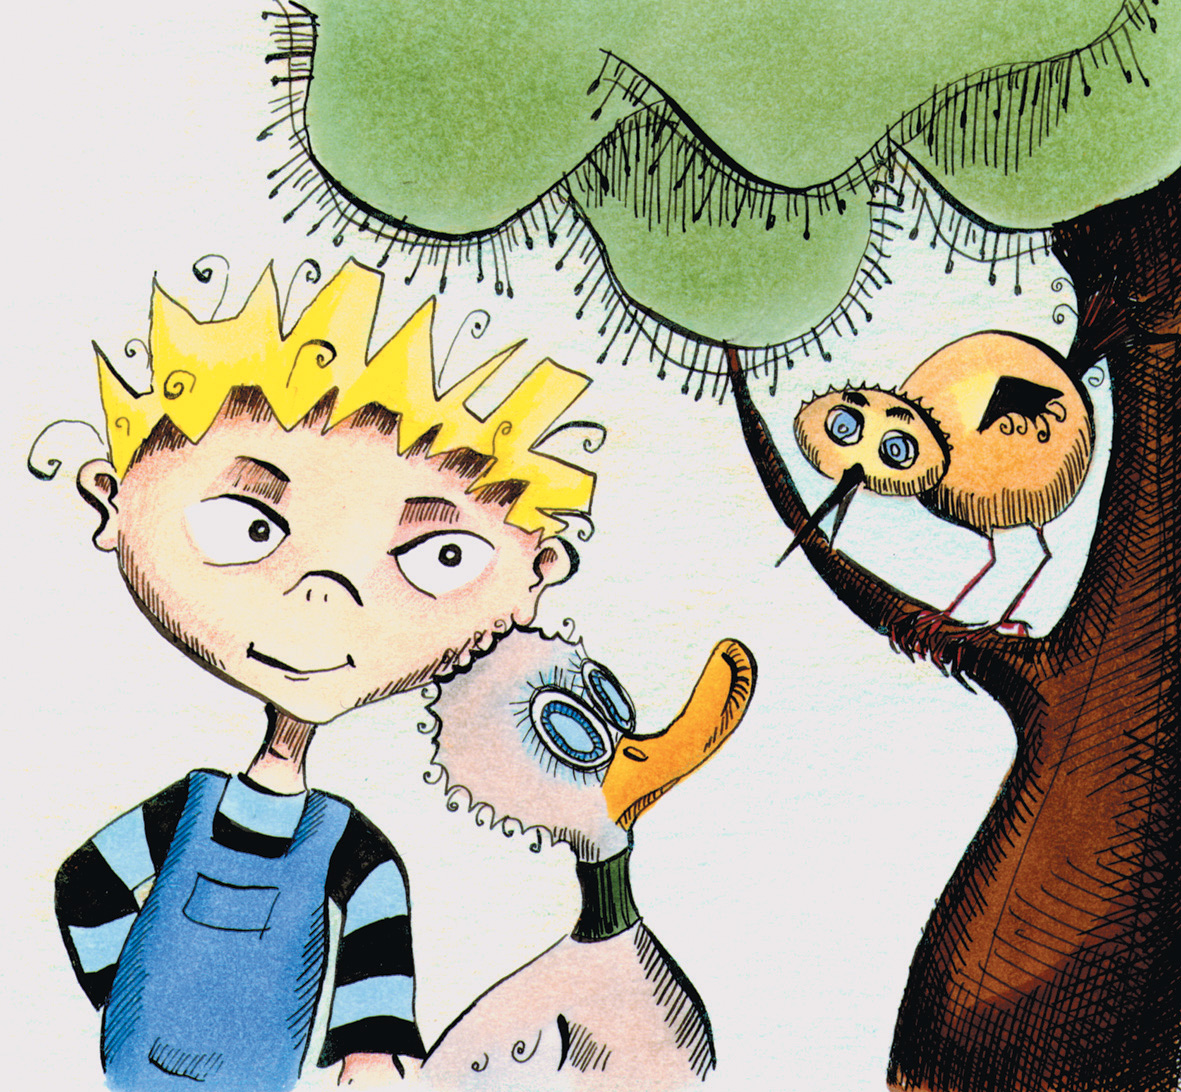 Eine Illustration von Peter, einer Gans und einem Vogel. Peter hat blonde Haare, trägt eine blaue Latzhose und ein gestreiftes Oberteil. Neben ihm steht eine Gans, die zu einem Vogel schaut, der auf einem Baum sitzt.